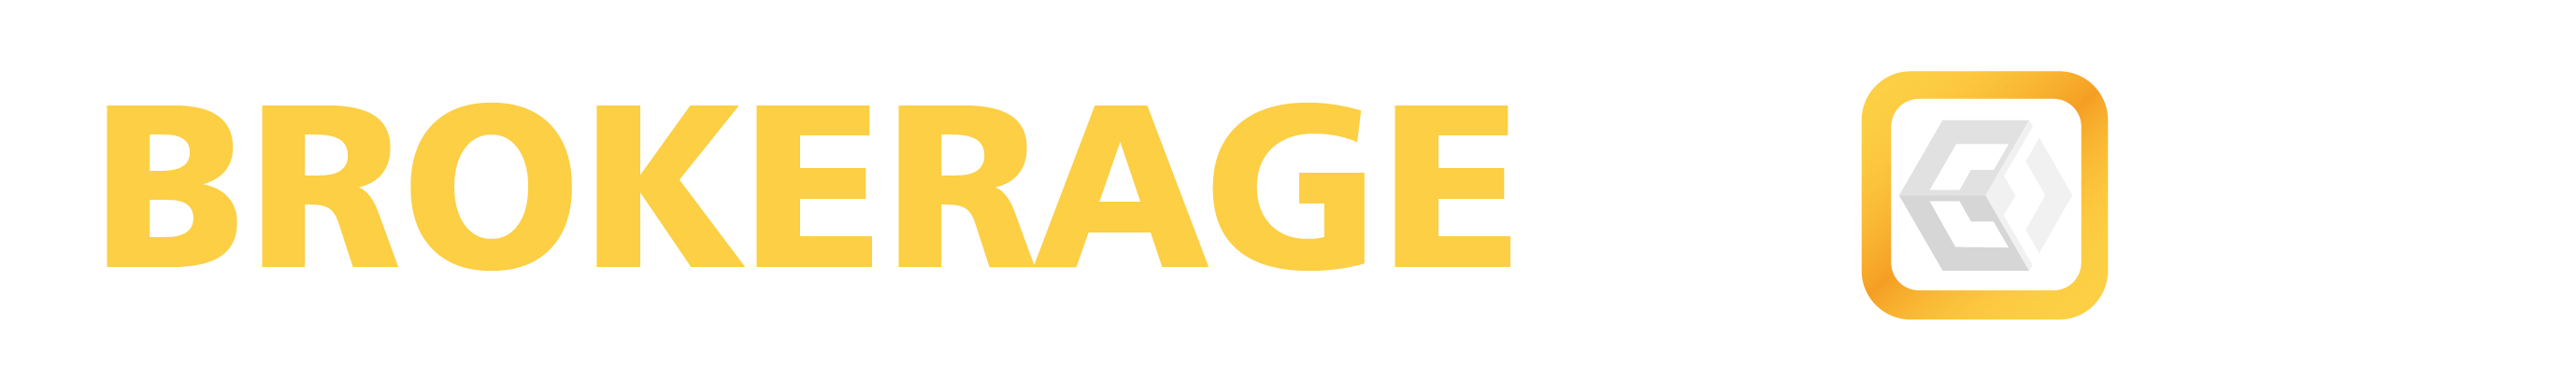 Brokerage Block Logo